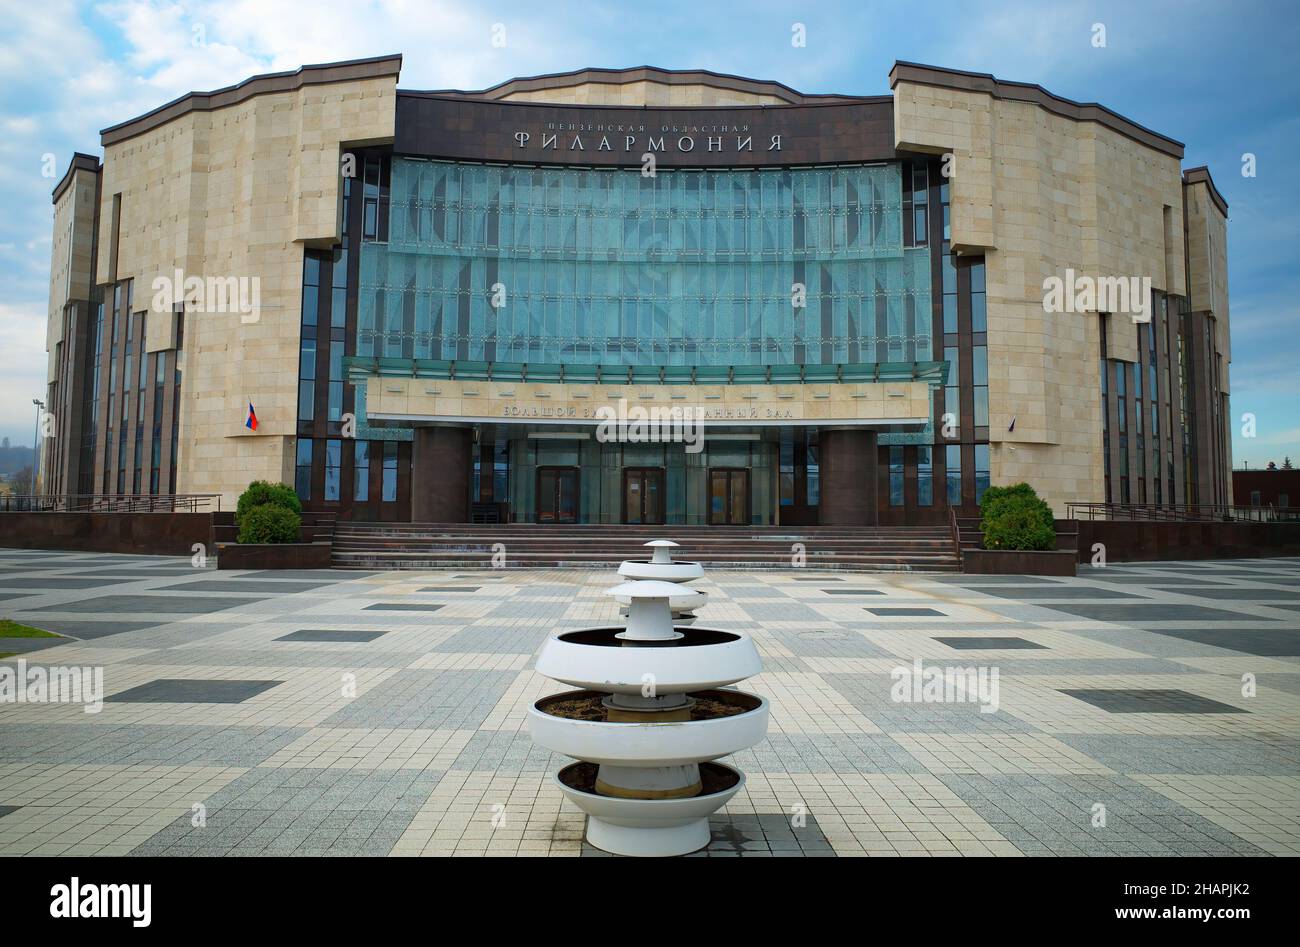 PENZA, RUSSIA - opera philharmony theater architecture Stock Photo